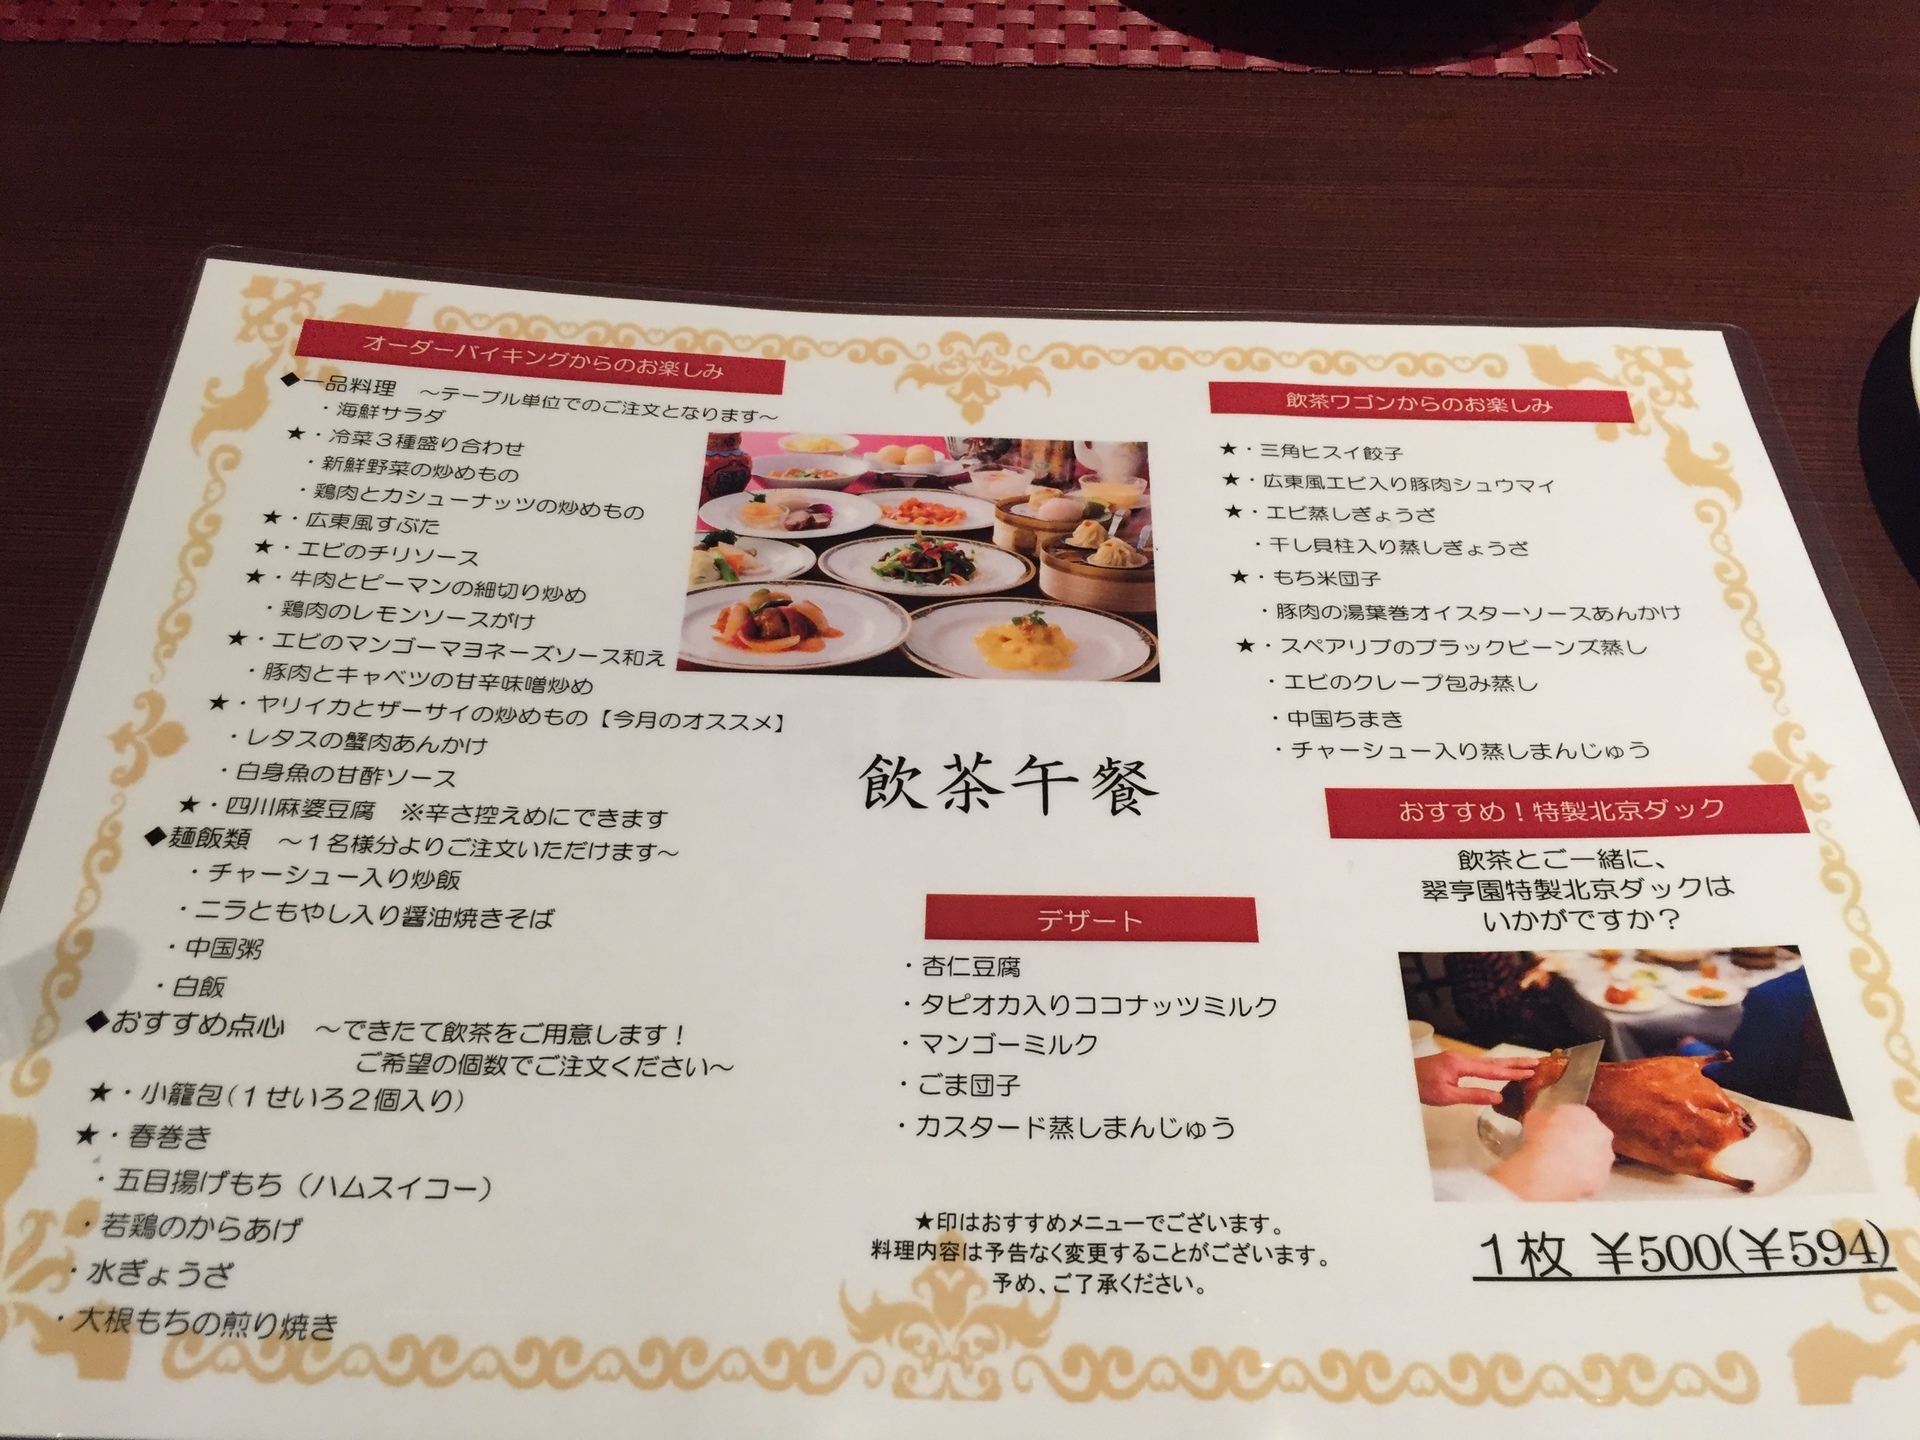 ホテル飲茶ビュッフェ食べ比べ 今回は 神戸ベイシェラトン クレジットカードを活用しお得に旅するミセスのちょっとイイ話